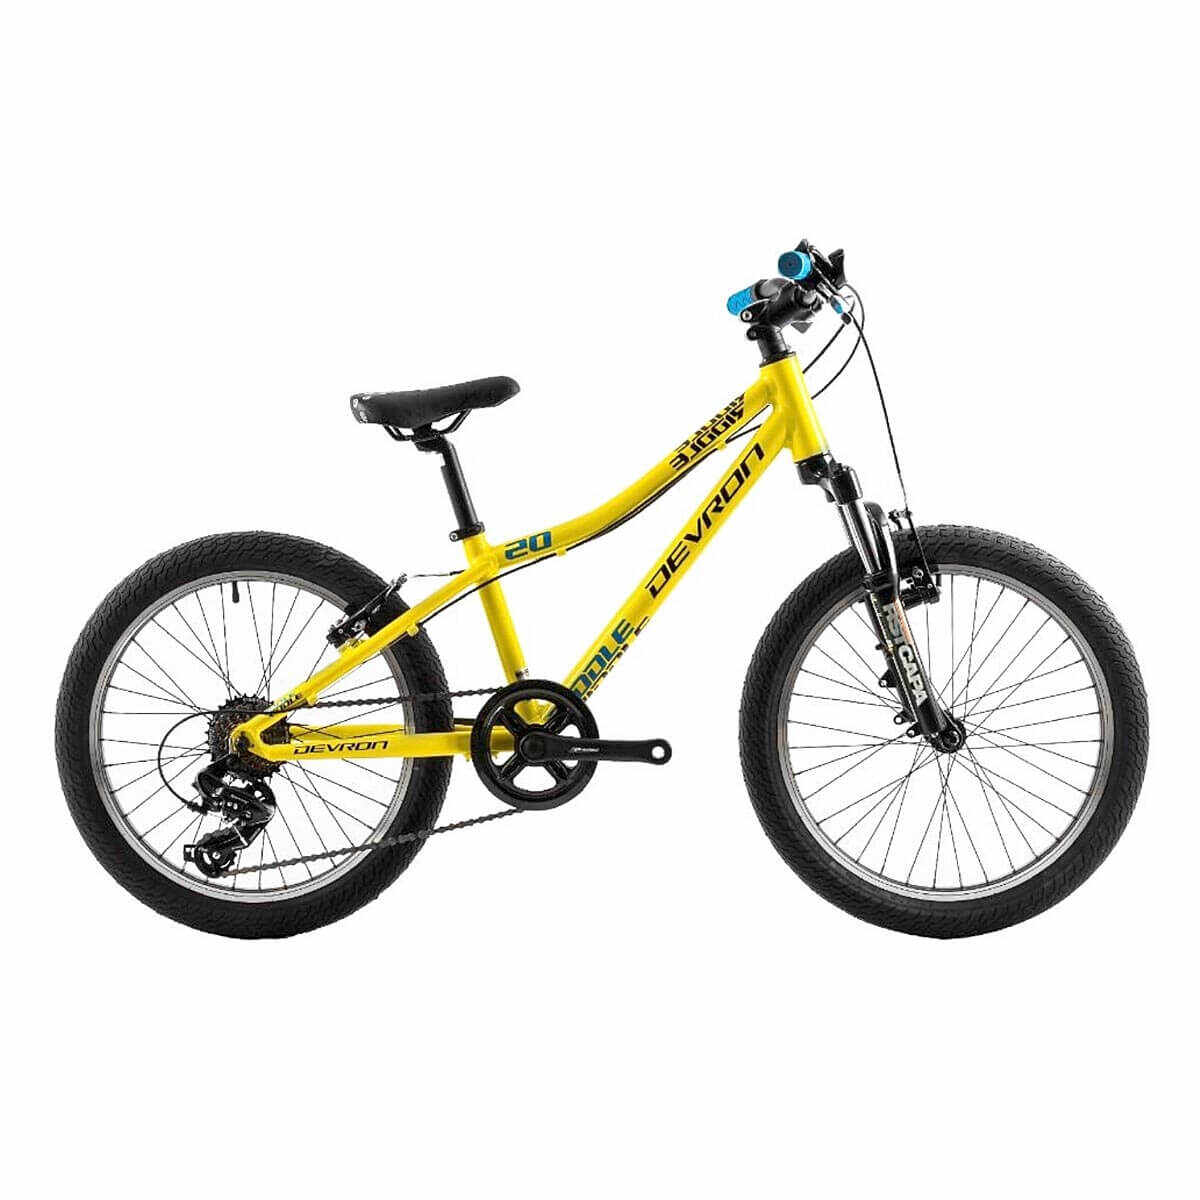 Bicicleta Copii Devron Riddle K2.2 2019 - 20 Inch, Galben